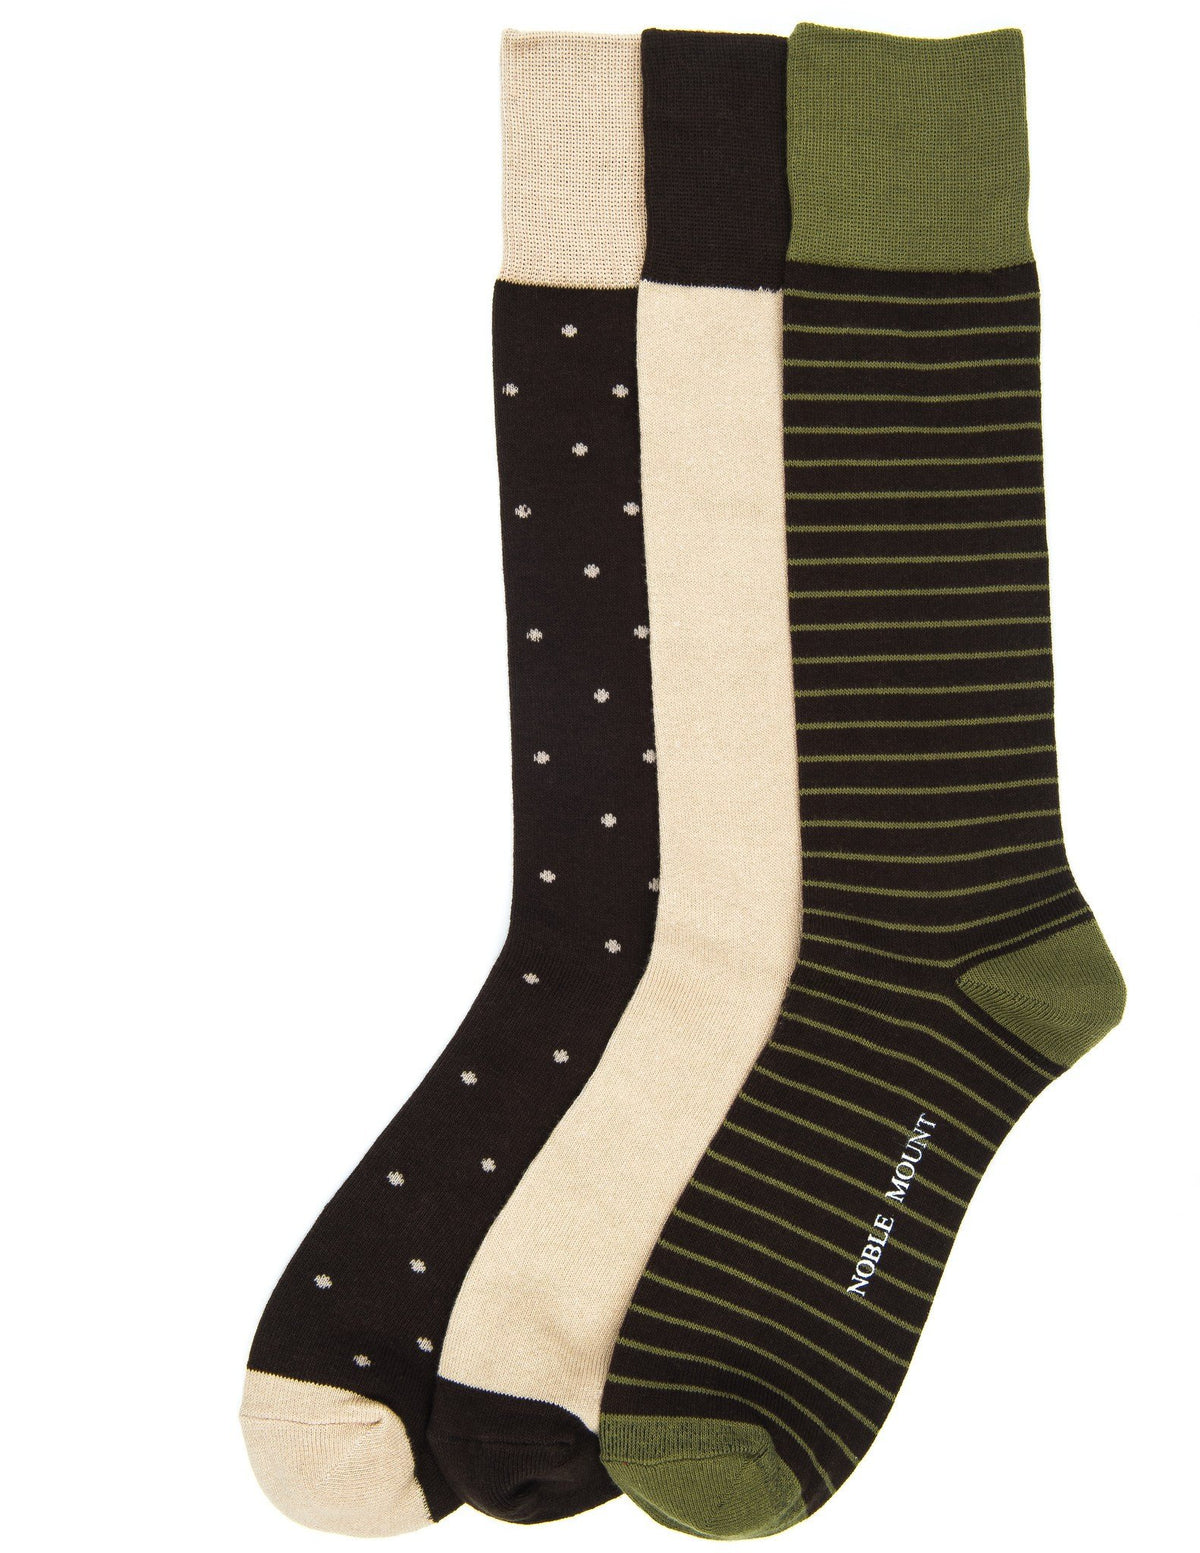 Men's Combed Cotton Dress Socks 3-Pack - Set A3